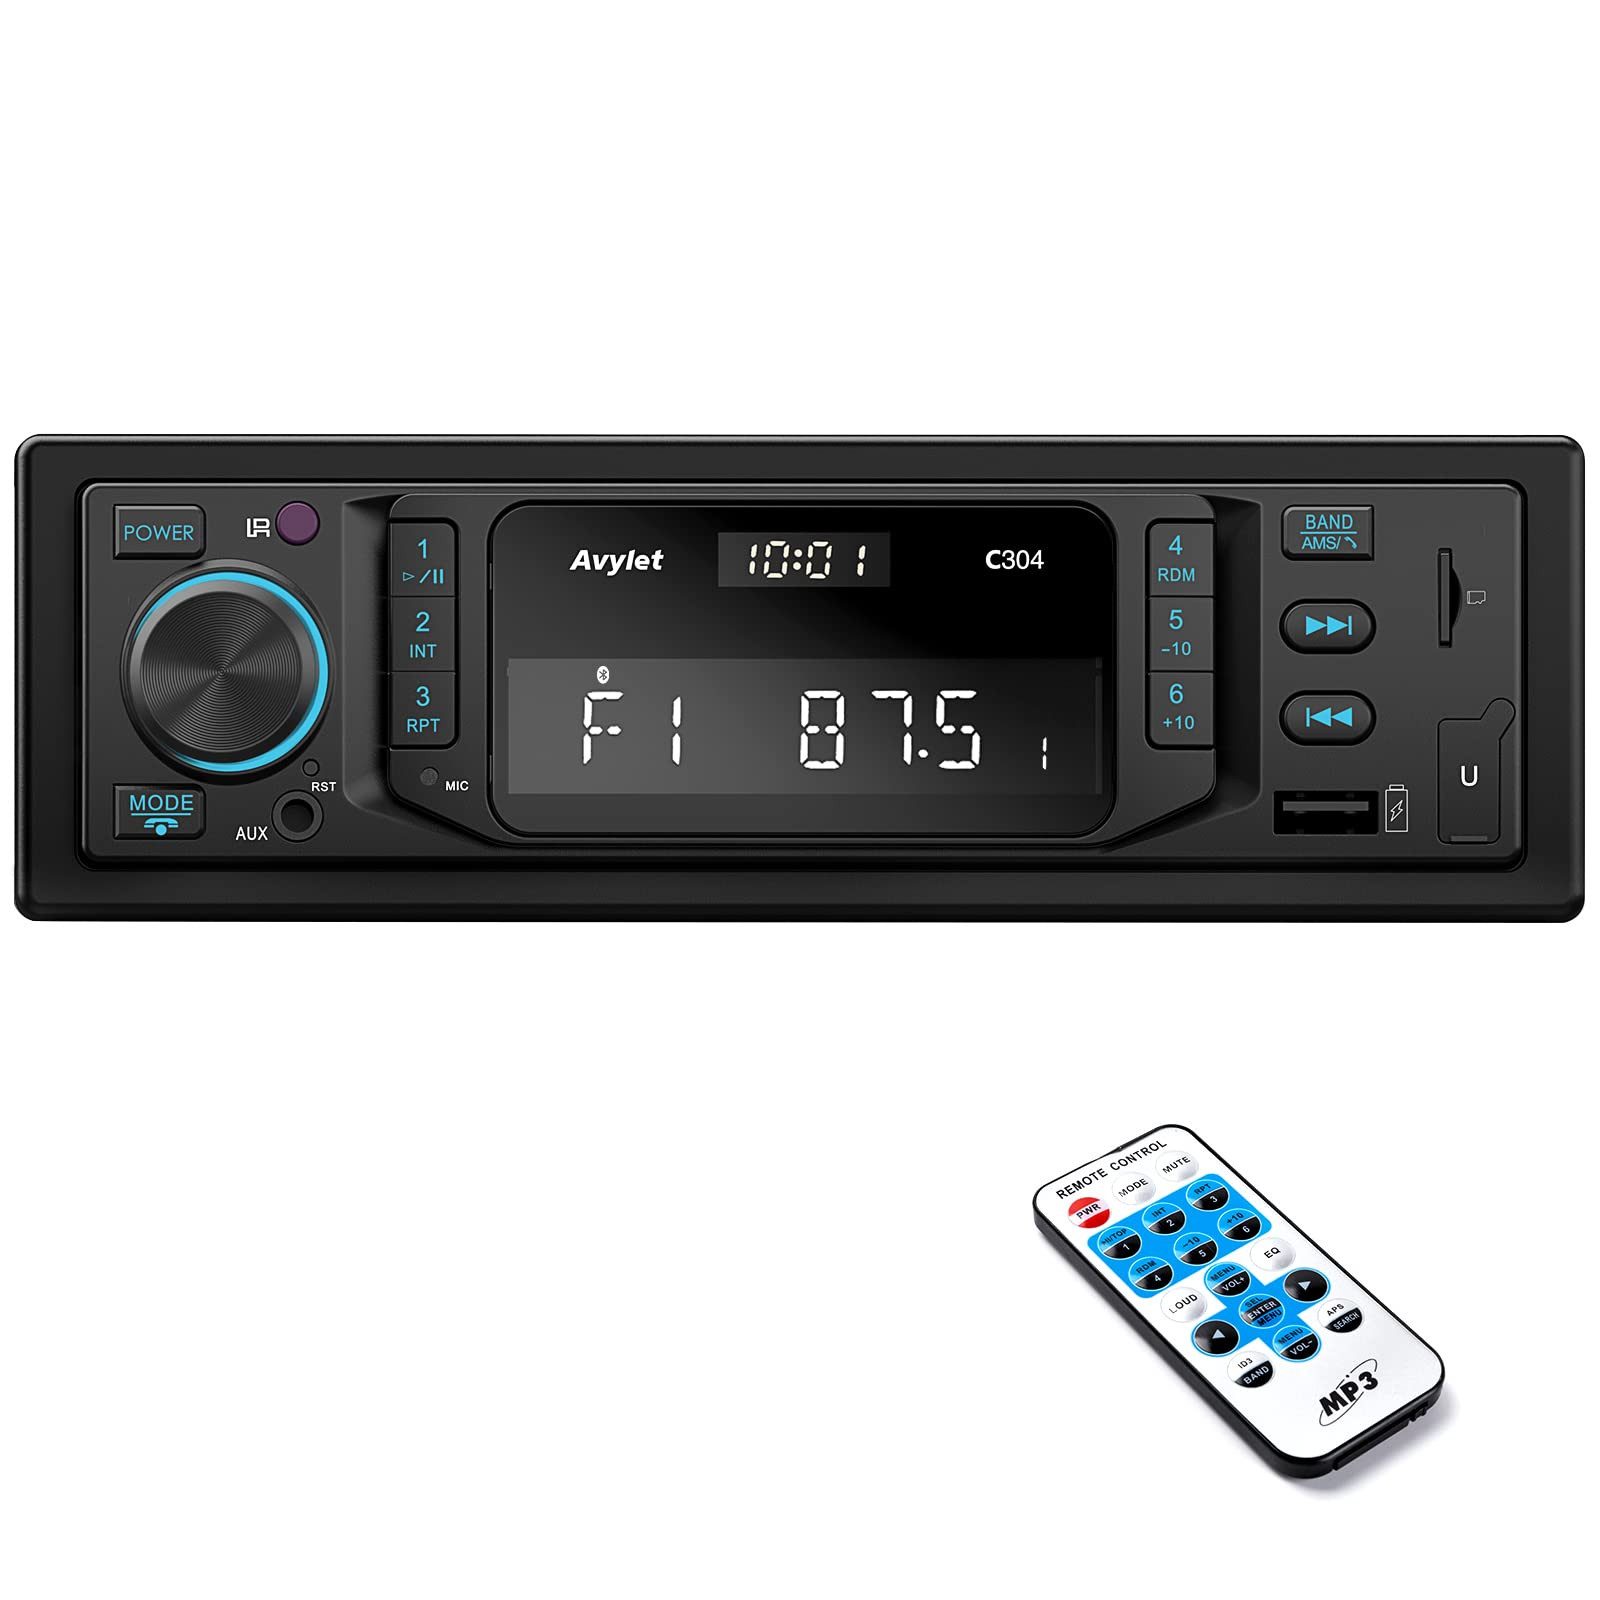 Avylet Nue Autoradio Bluetooth 5.0 mit RDS/FM/AM/7 Farben 1 Din Autoradio Autoradio (RDS, Subwoofer, FM Tuner, AM-Tuner, Equalizer, Freisprecheinrichtung,2 USB/AUX-IN/MP3/SD,30 Sender Gespeichert Werden)